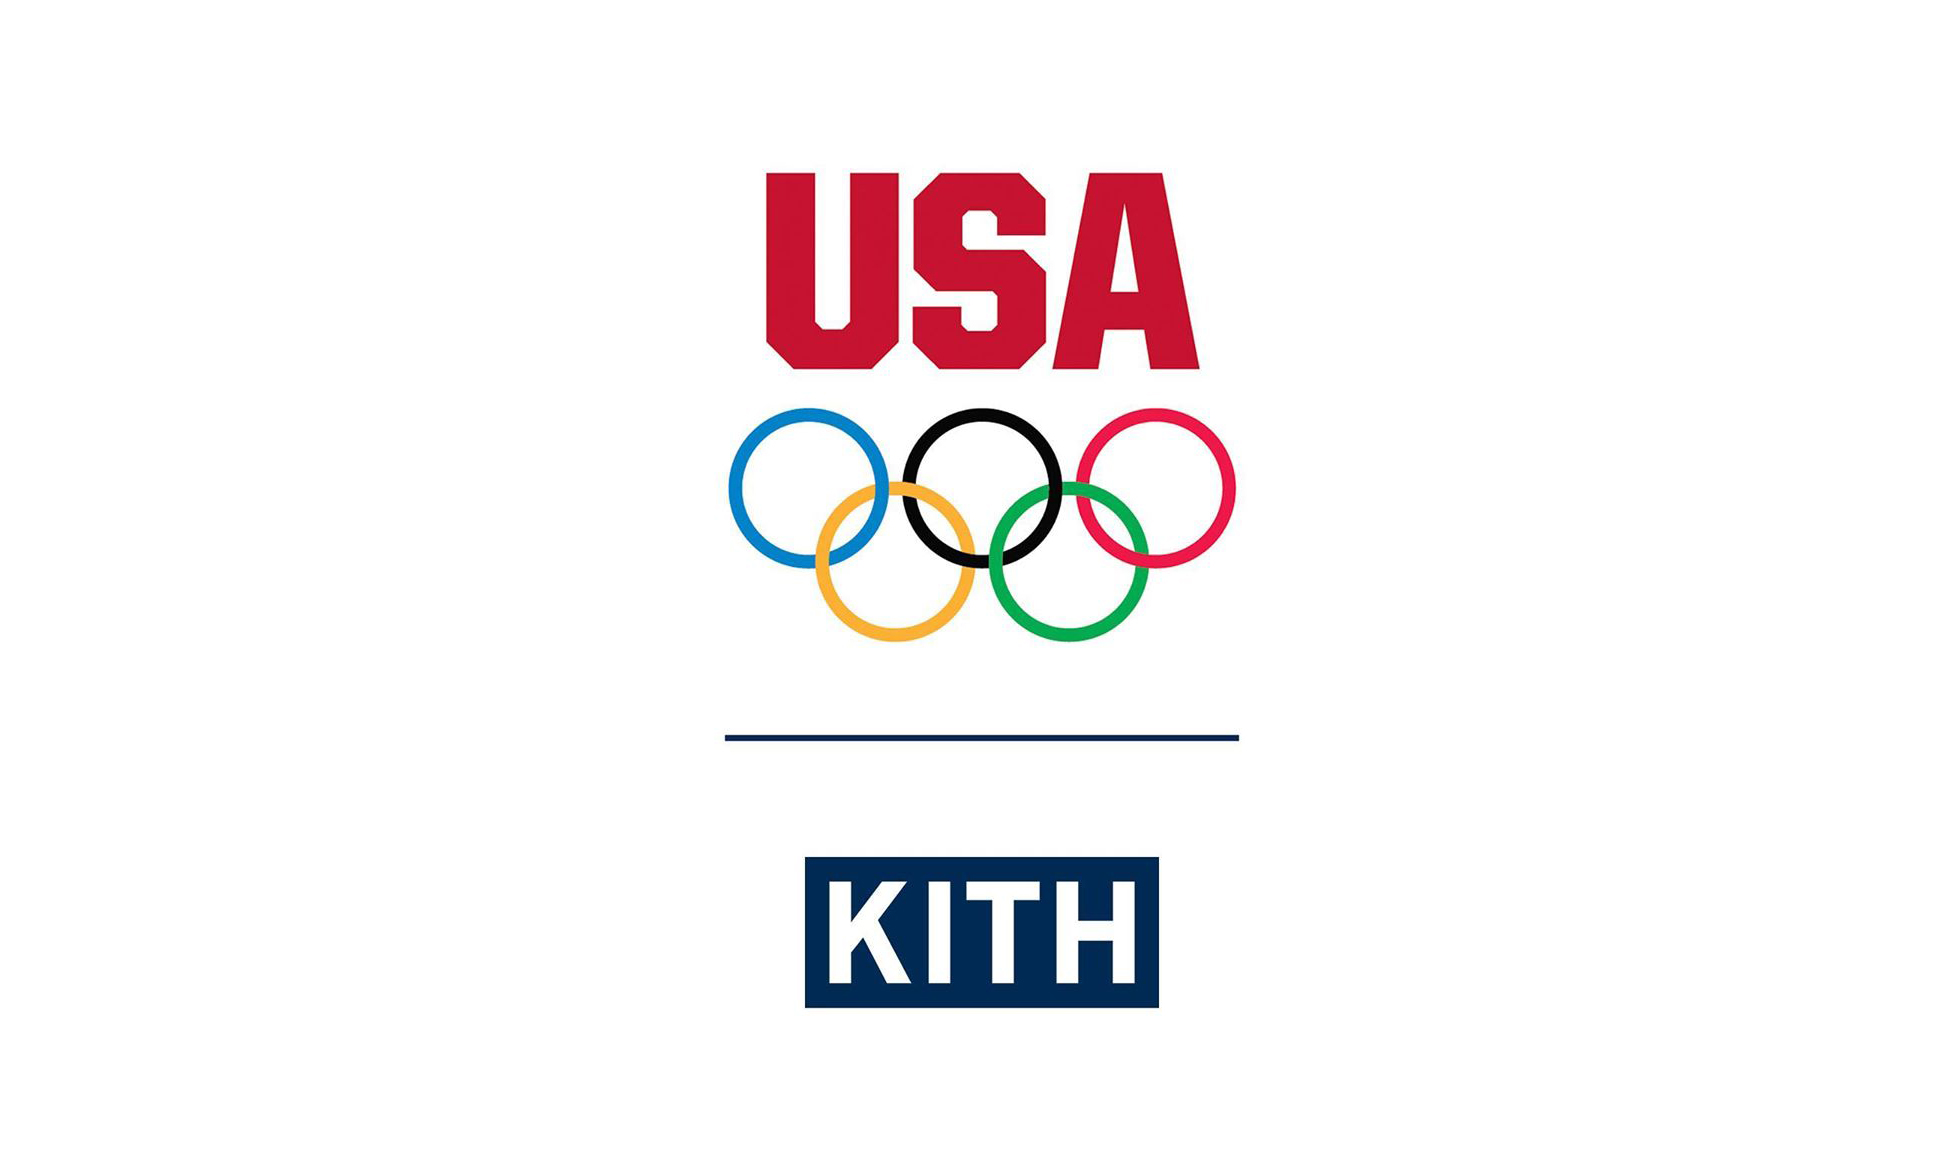 KITH 已成为东京奥运会美国队官方合作伙伴